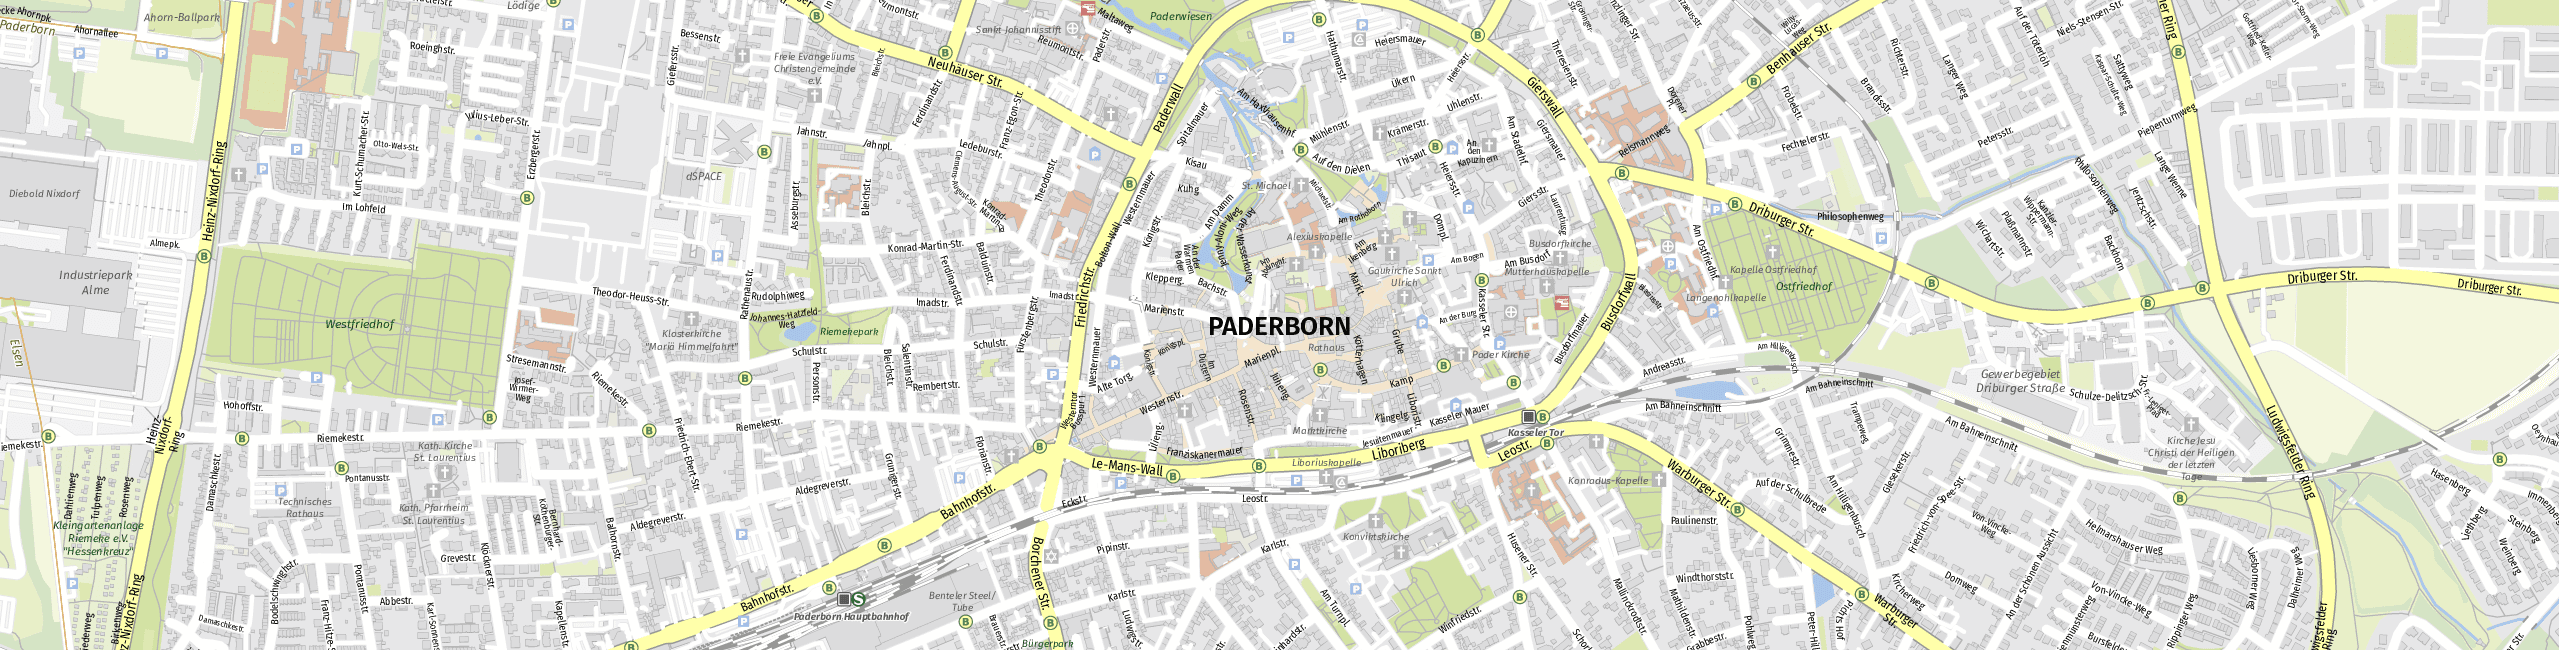 Stadtplan Paderborn zum Downloaden.